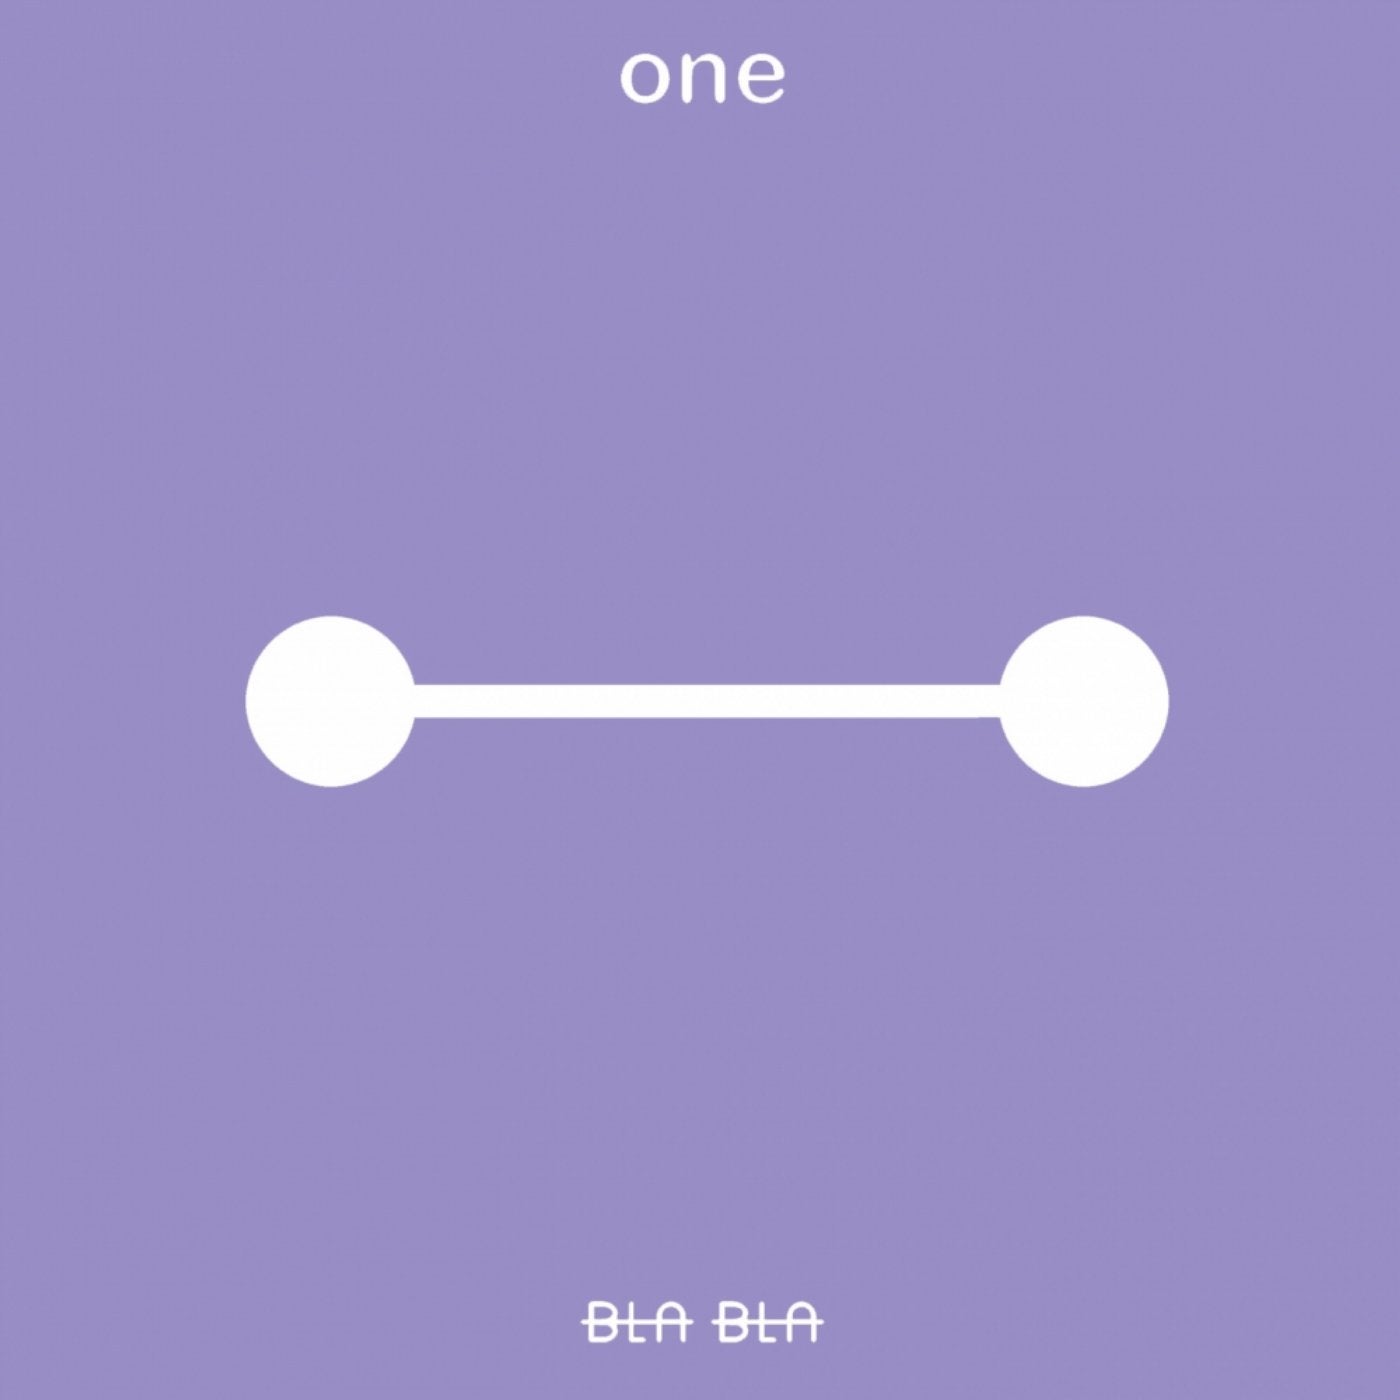 One [Xulo]